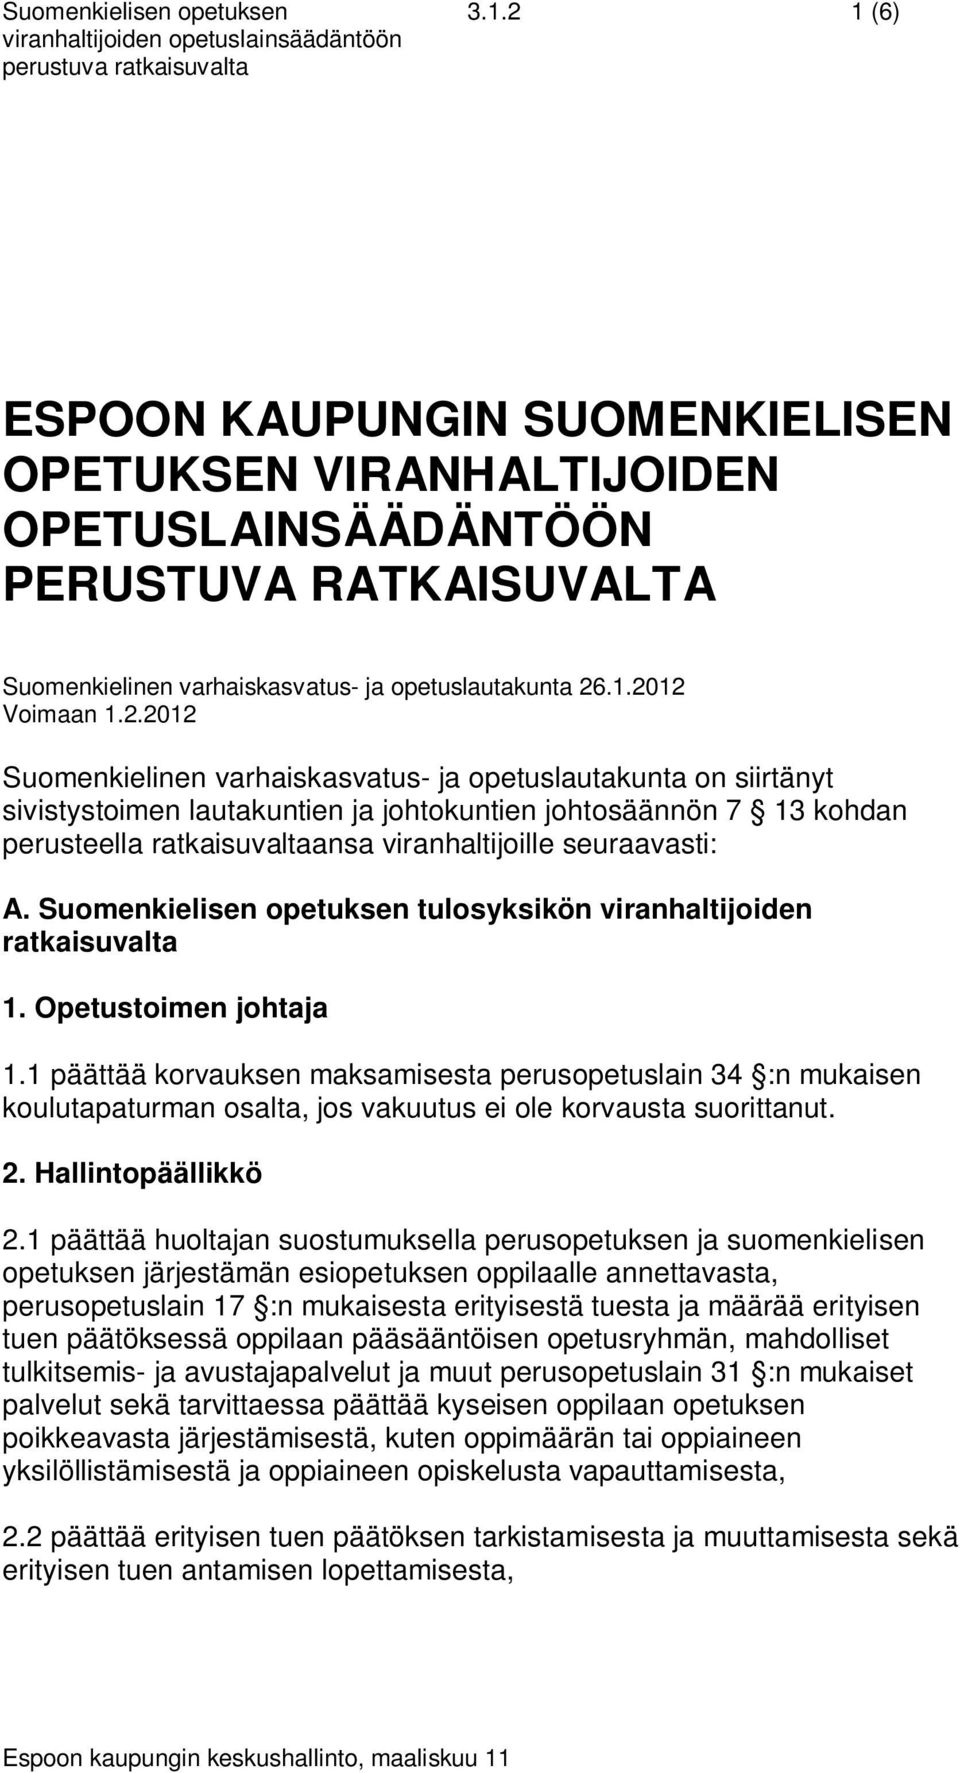 seuraavasti: A. Suomenkielisen opetuksen tulosyksikön viranhaltijoiden ratkaisuvalta 1. Opetustoimen johtaja 1.